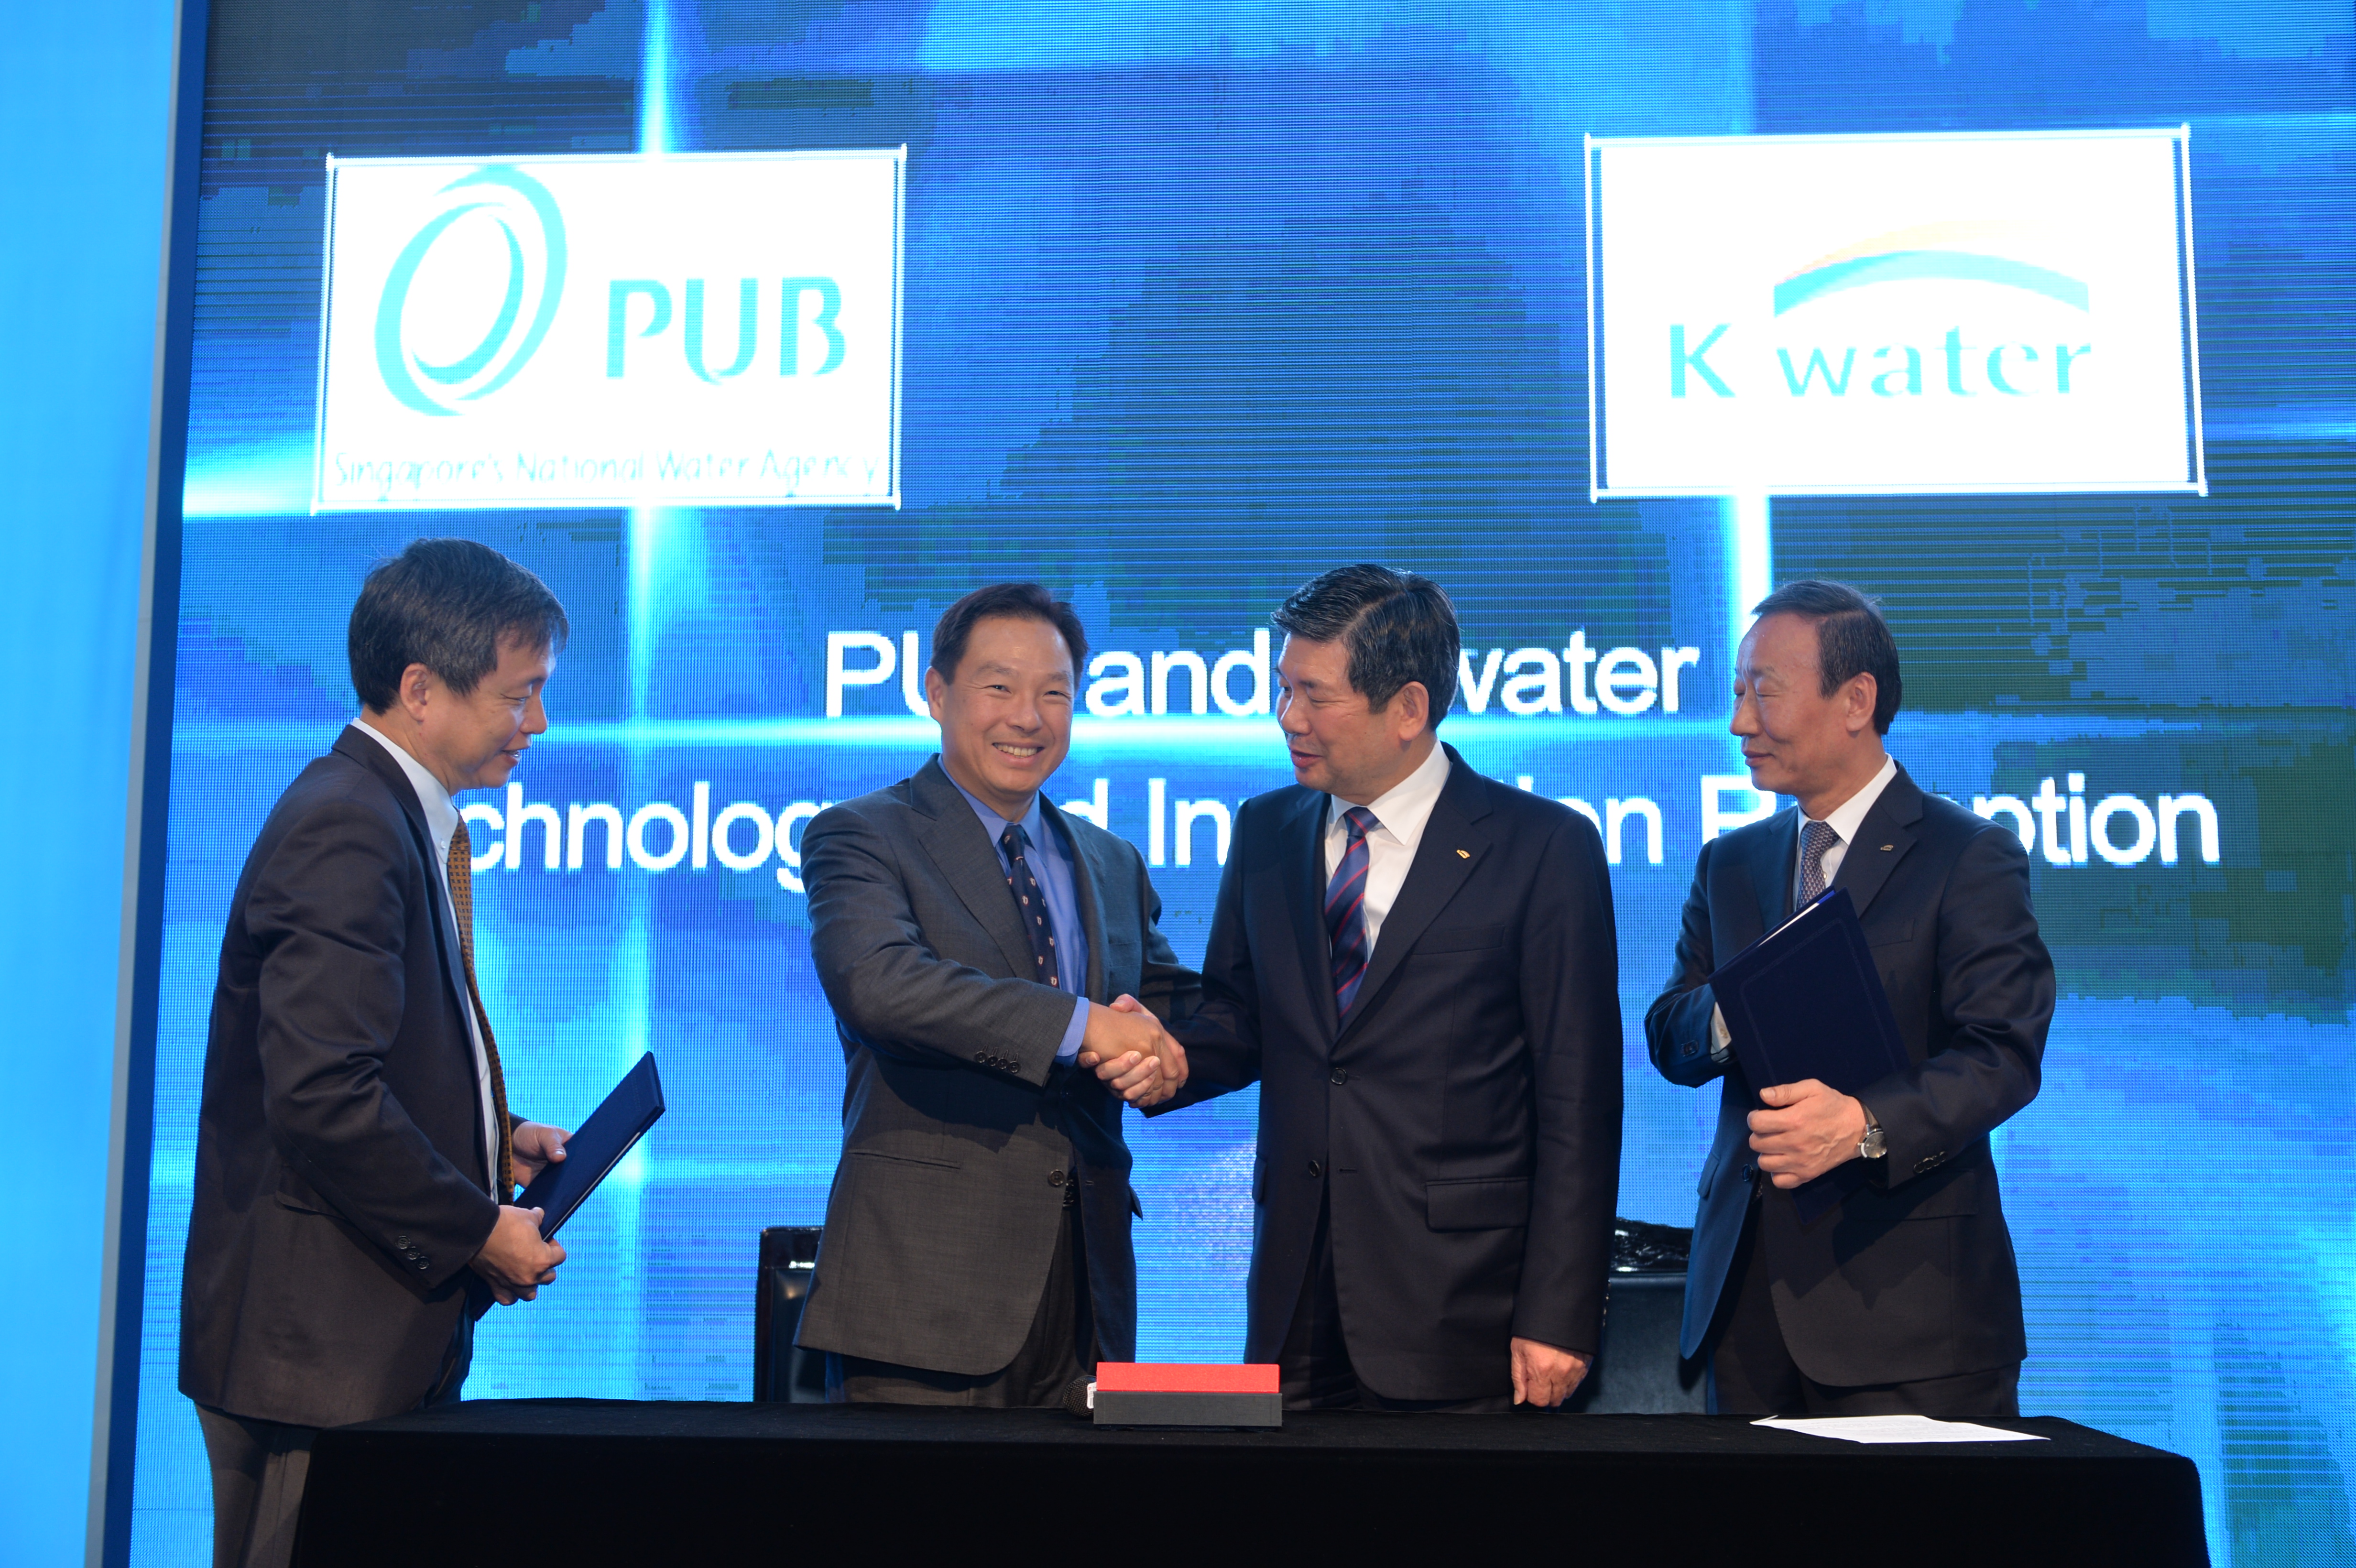 K-water, 싱가포르 수자원공사(PUB)와 기술 발전 업무 협약한다! 이미지[1]